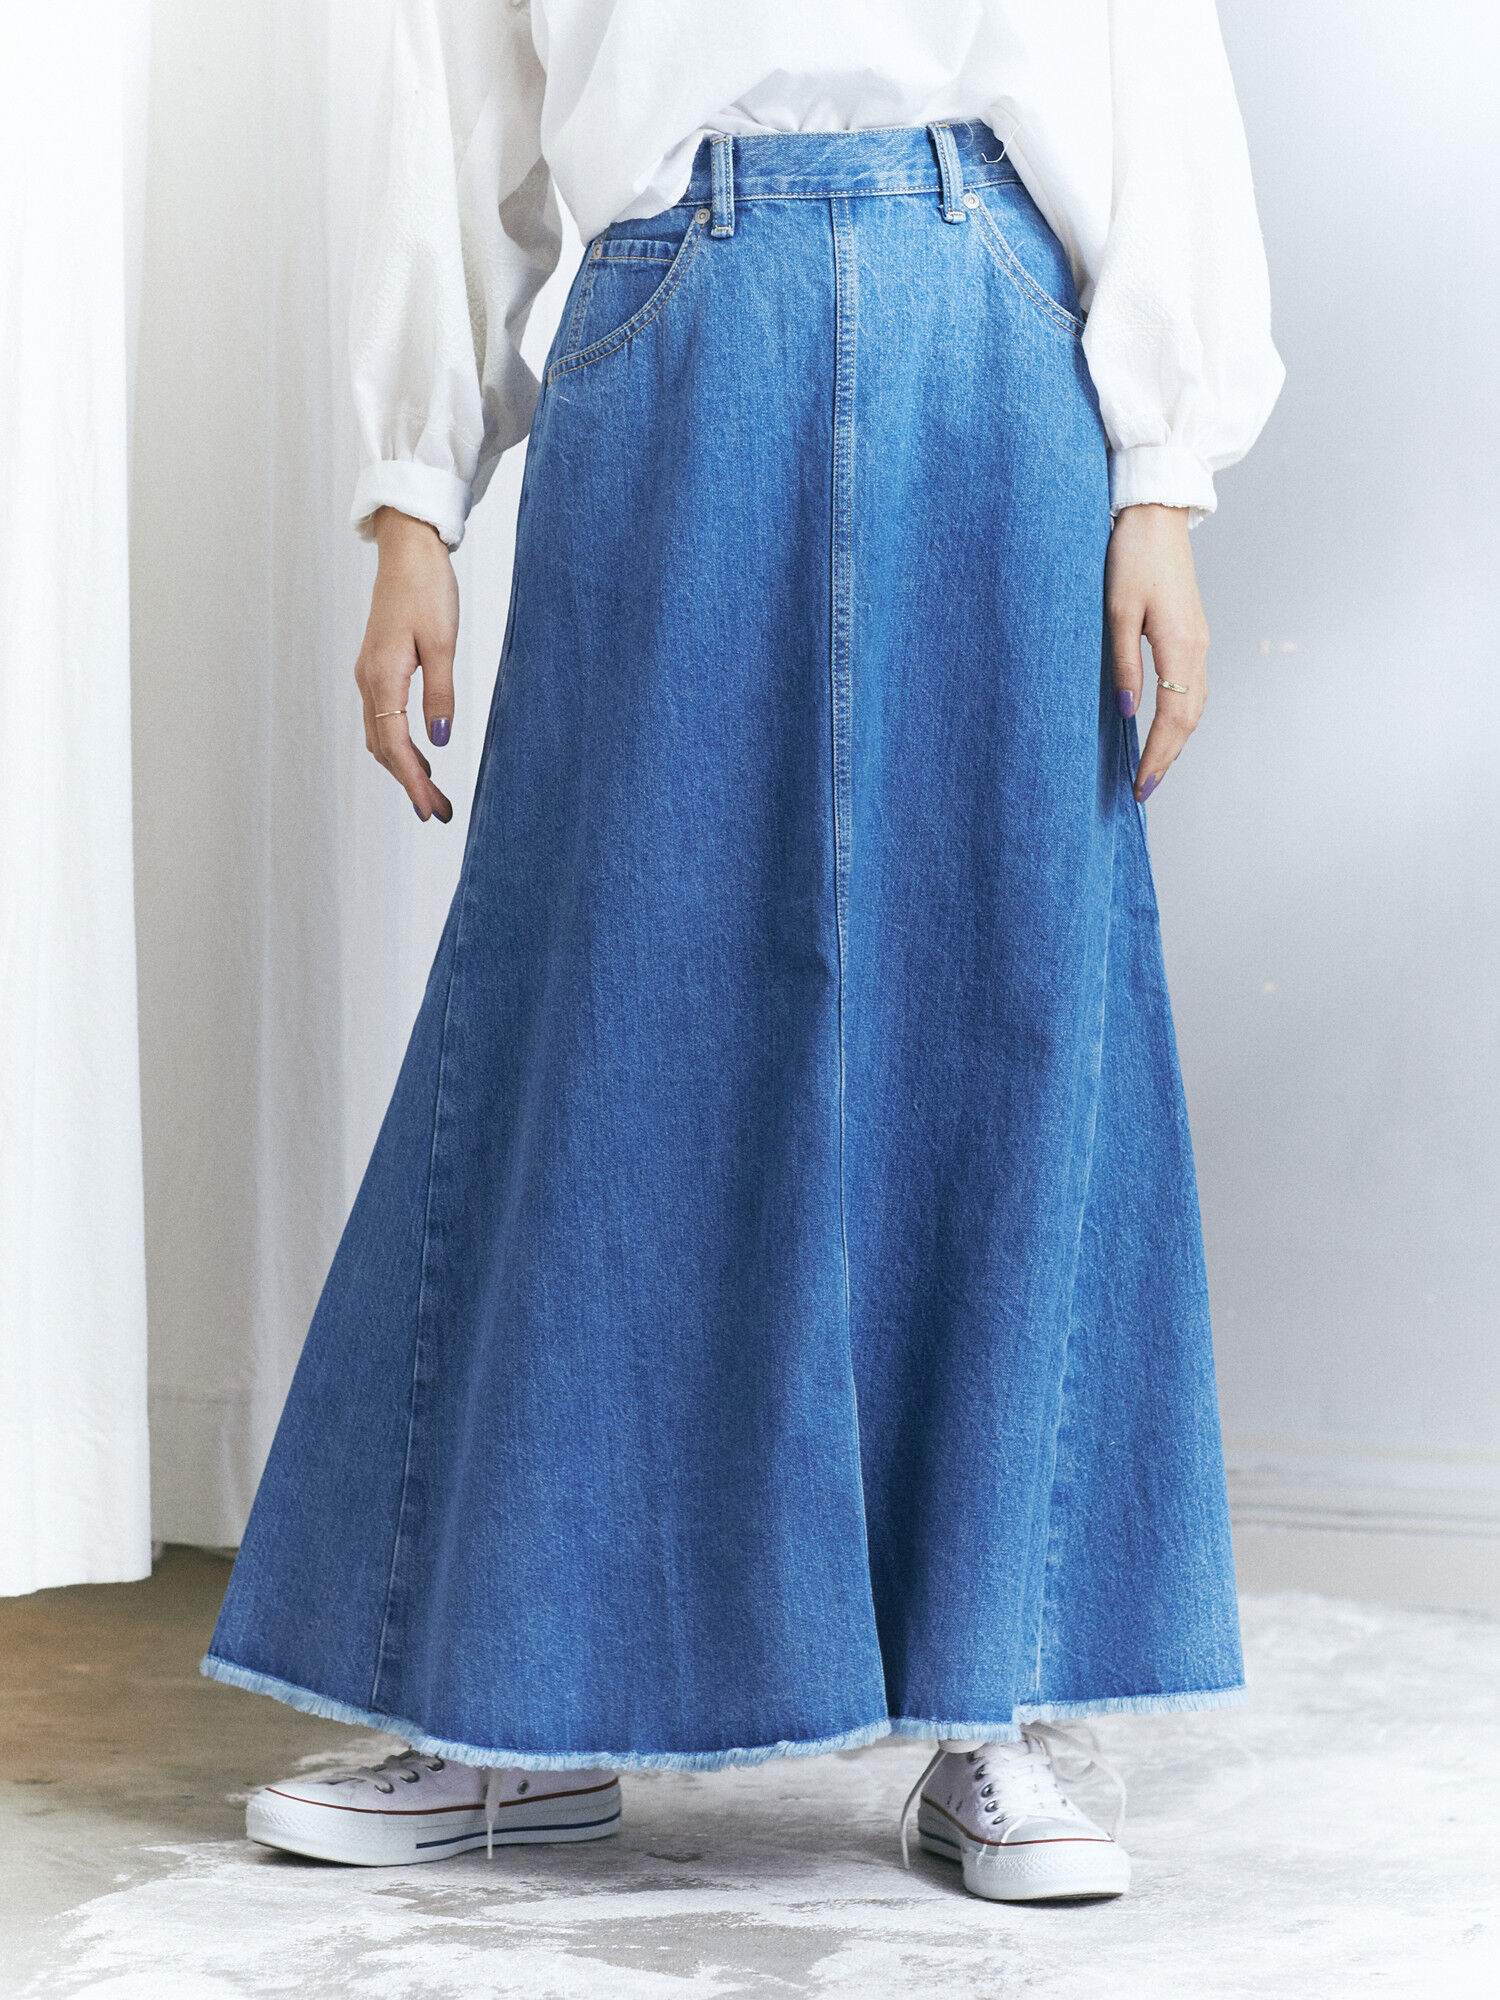 Craft Standard Boutique クラフト スタンダード ブティック のデザインデニムスカート スカート ファッションレンタルのメチャカリ